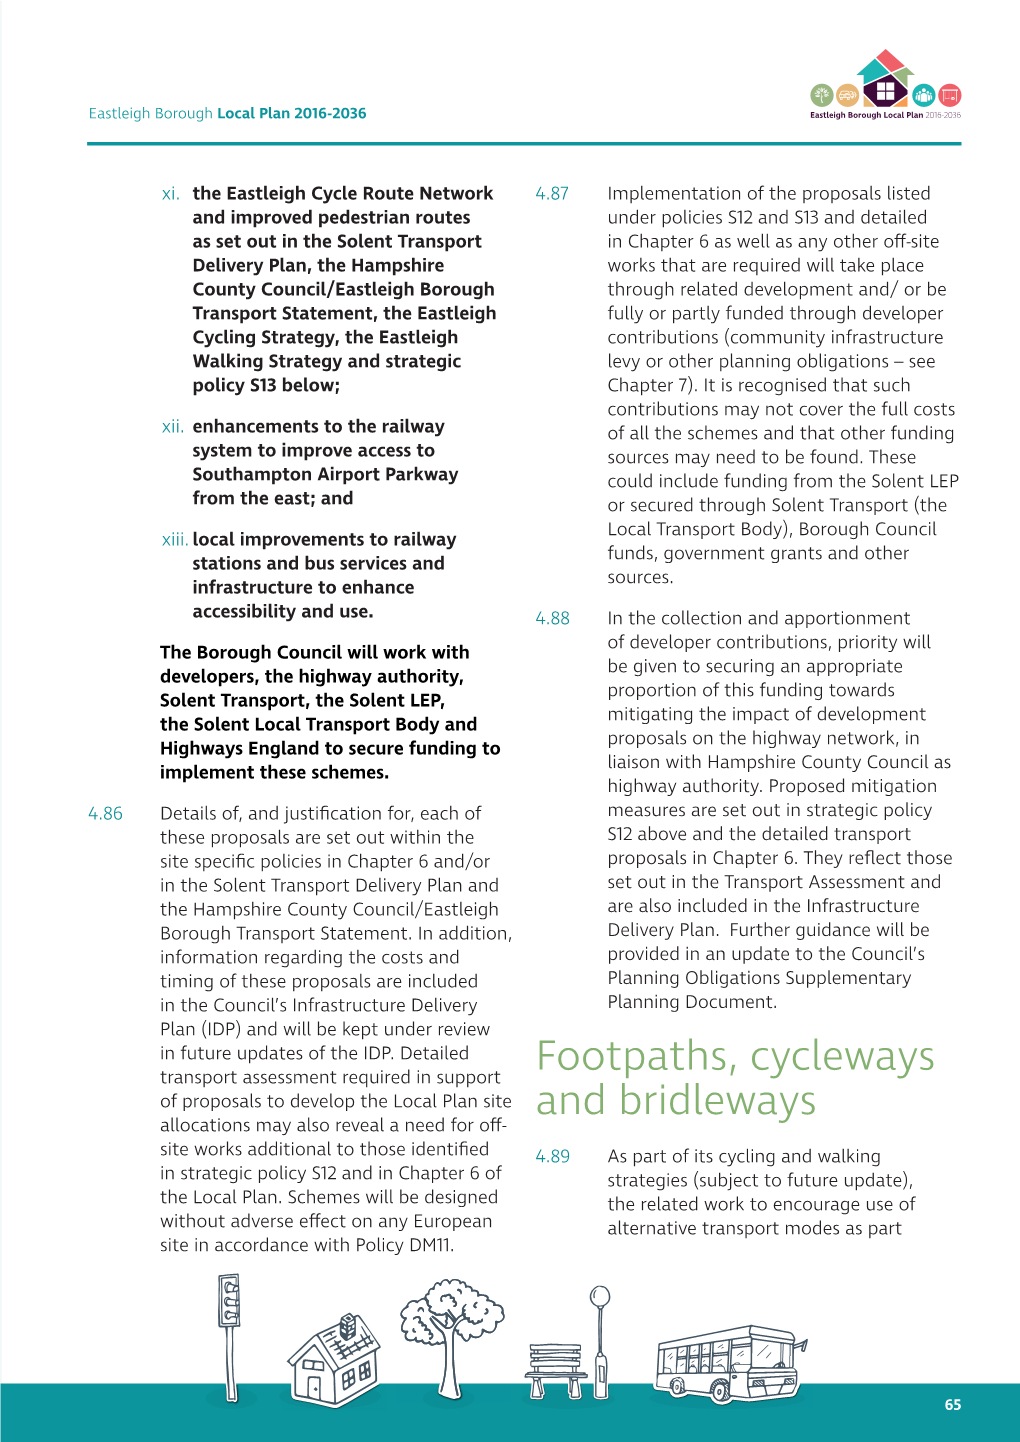 Footpaths, Cycleways and Bridleways